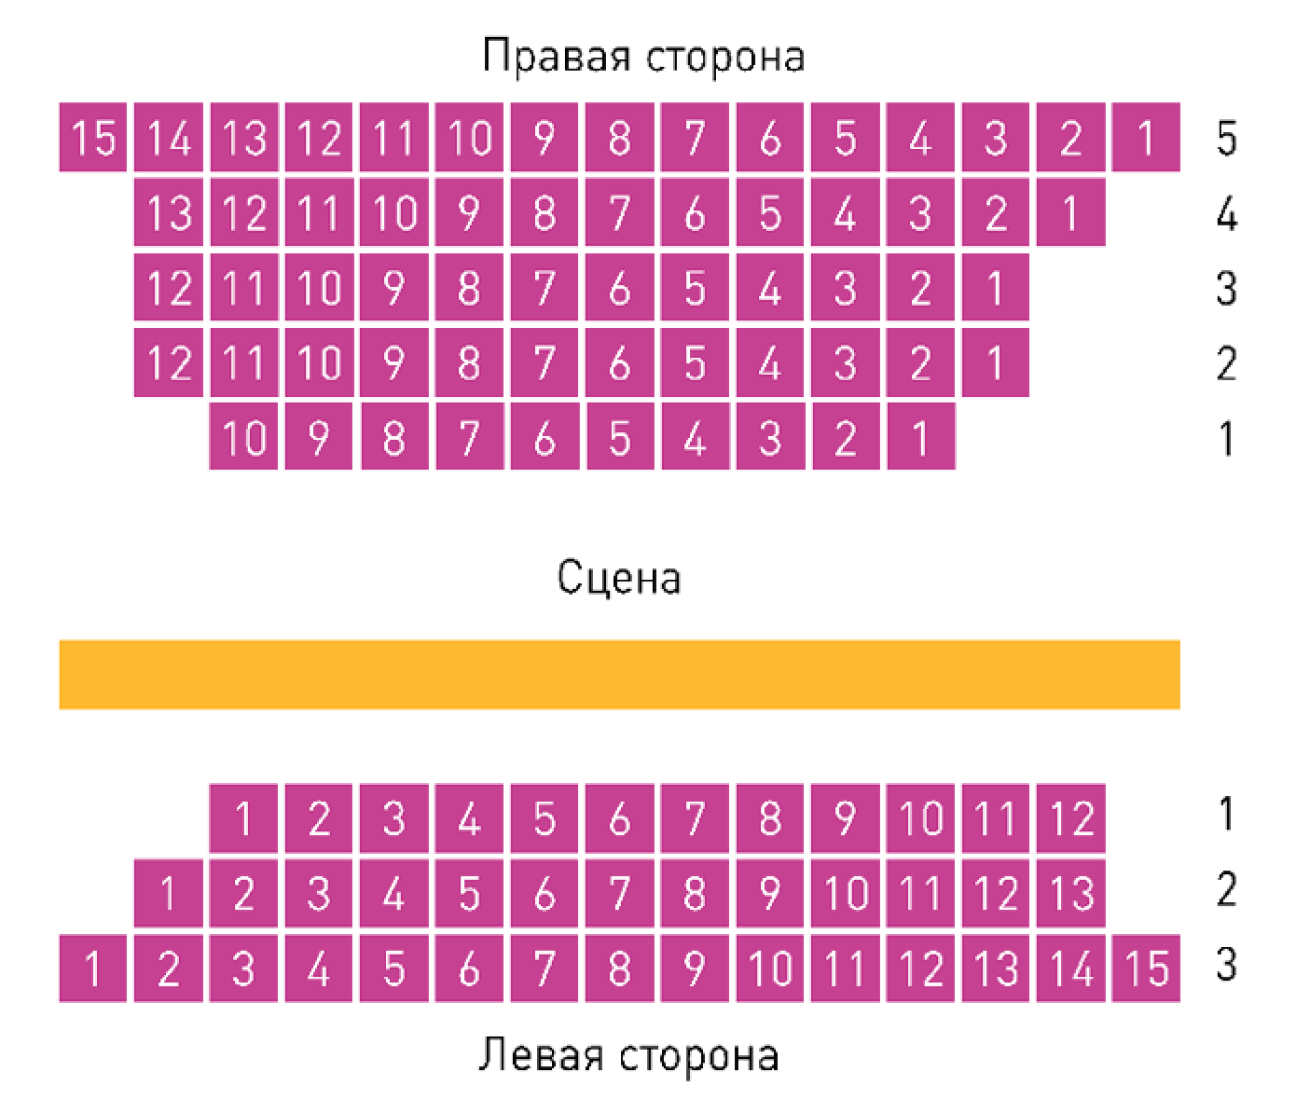 театр пушкина официальный сайт москва схема зала с местами